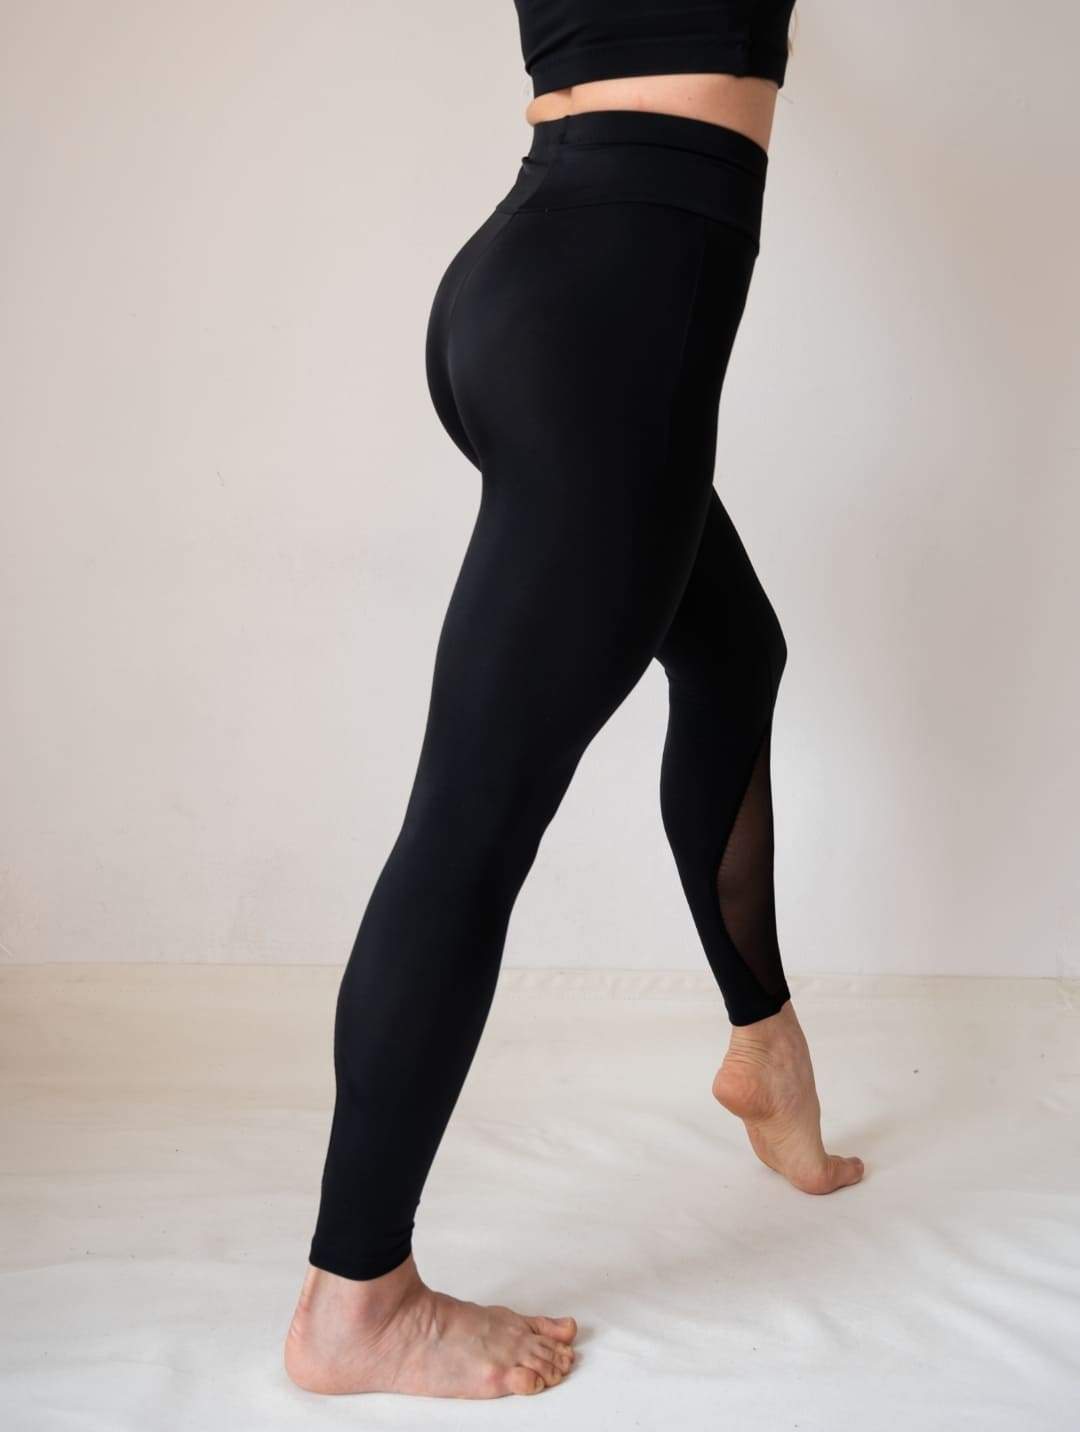 Black Mesh Legging Women Yoga Mesh Fitness Legging With Pocket